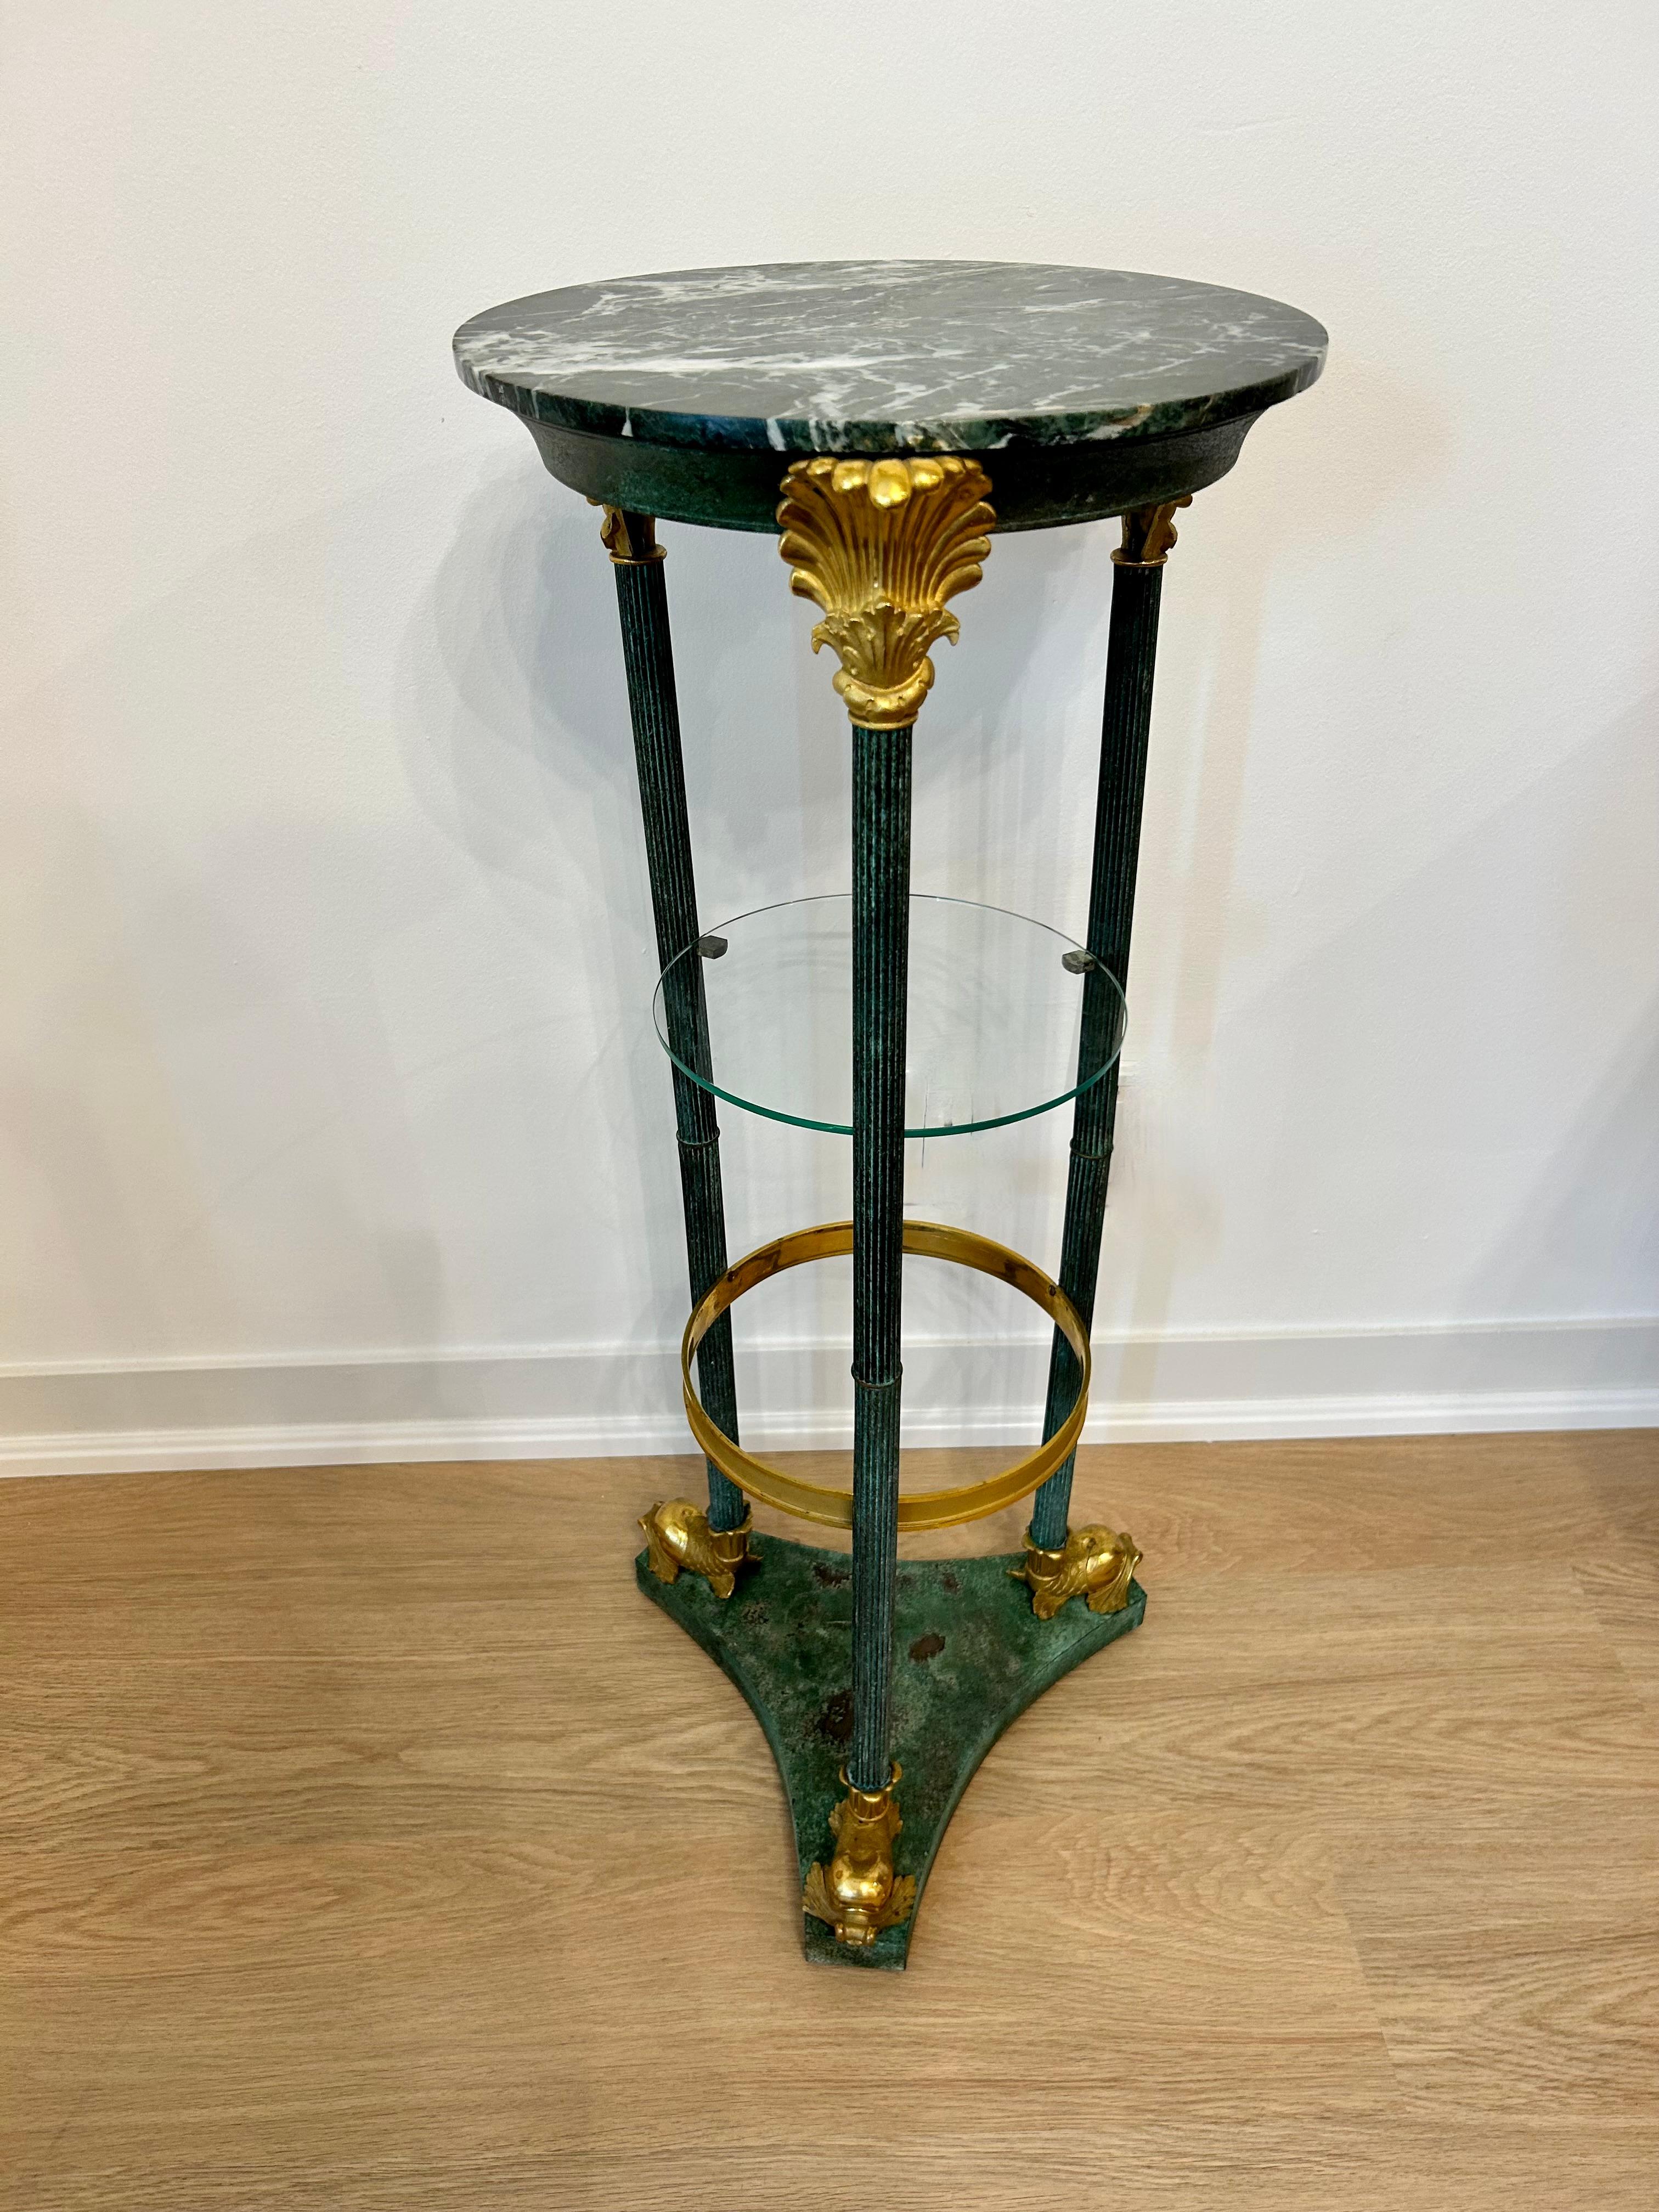 Patinierter Metall-Sockeltisch des 19. Jahrhunderts mit drei Beinen und dreieckigem Sockel in Grünspan-Finish. Vergoldet  Delphinfüße aus vergoldeter Bronze, florale Kapitelle und ein Innenring. Die Platte ist aus grünem Marmor, und es gibt eine